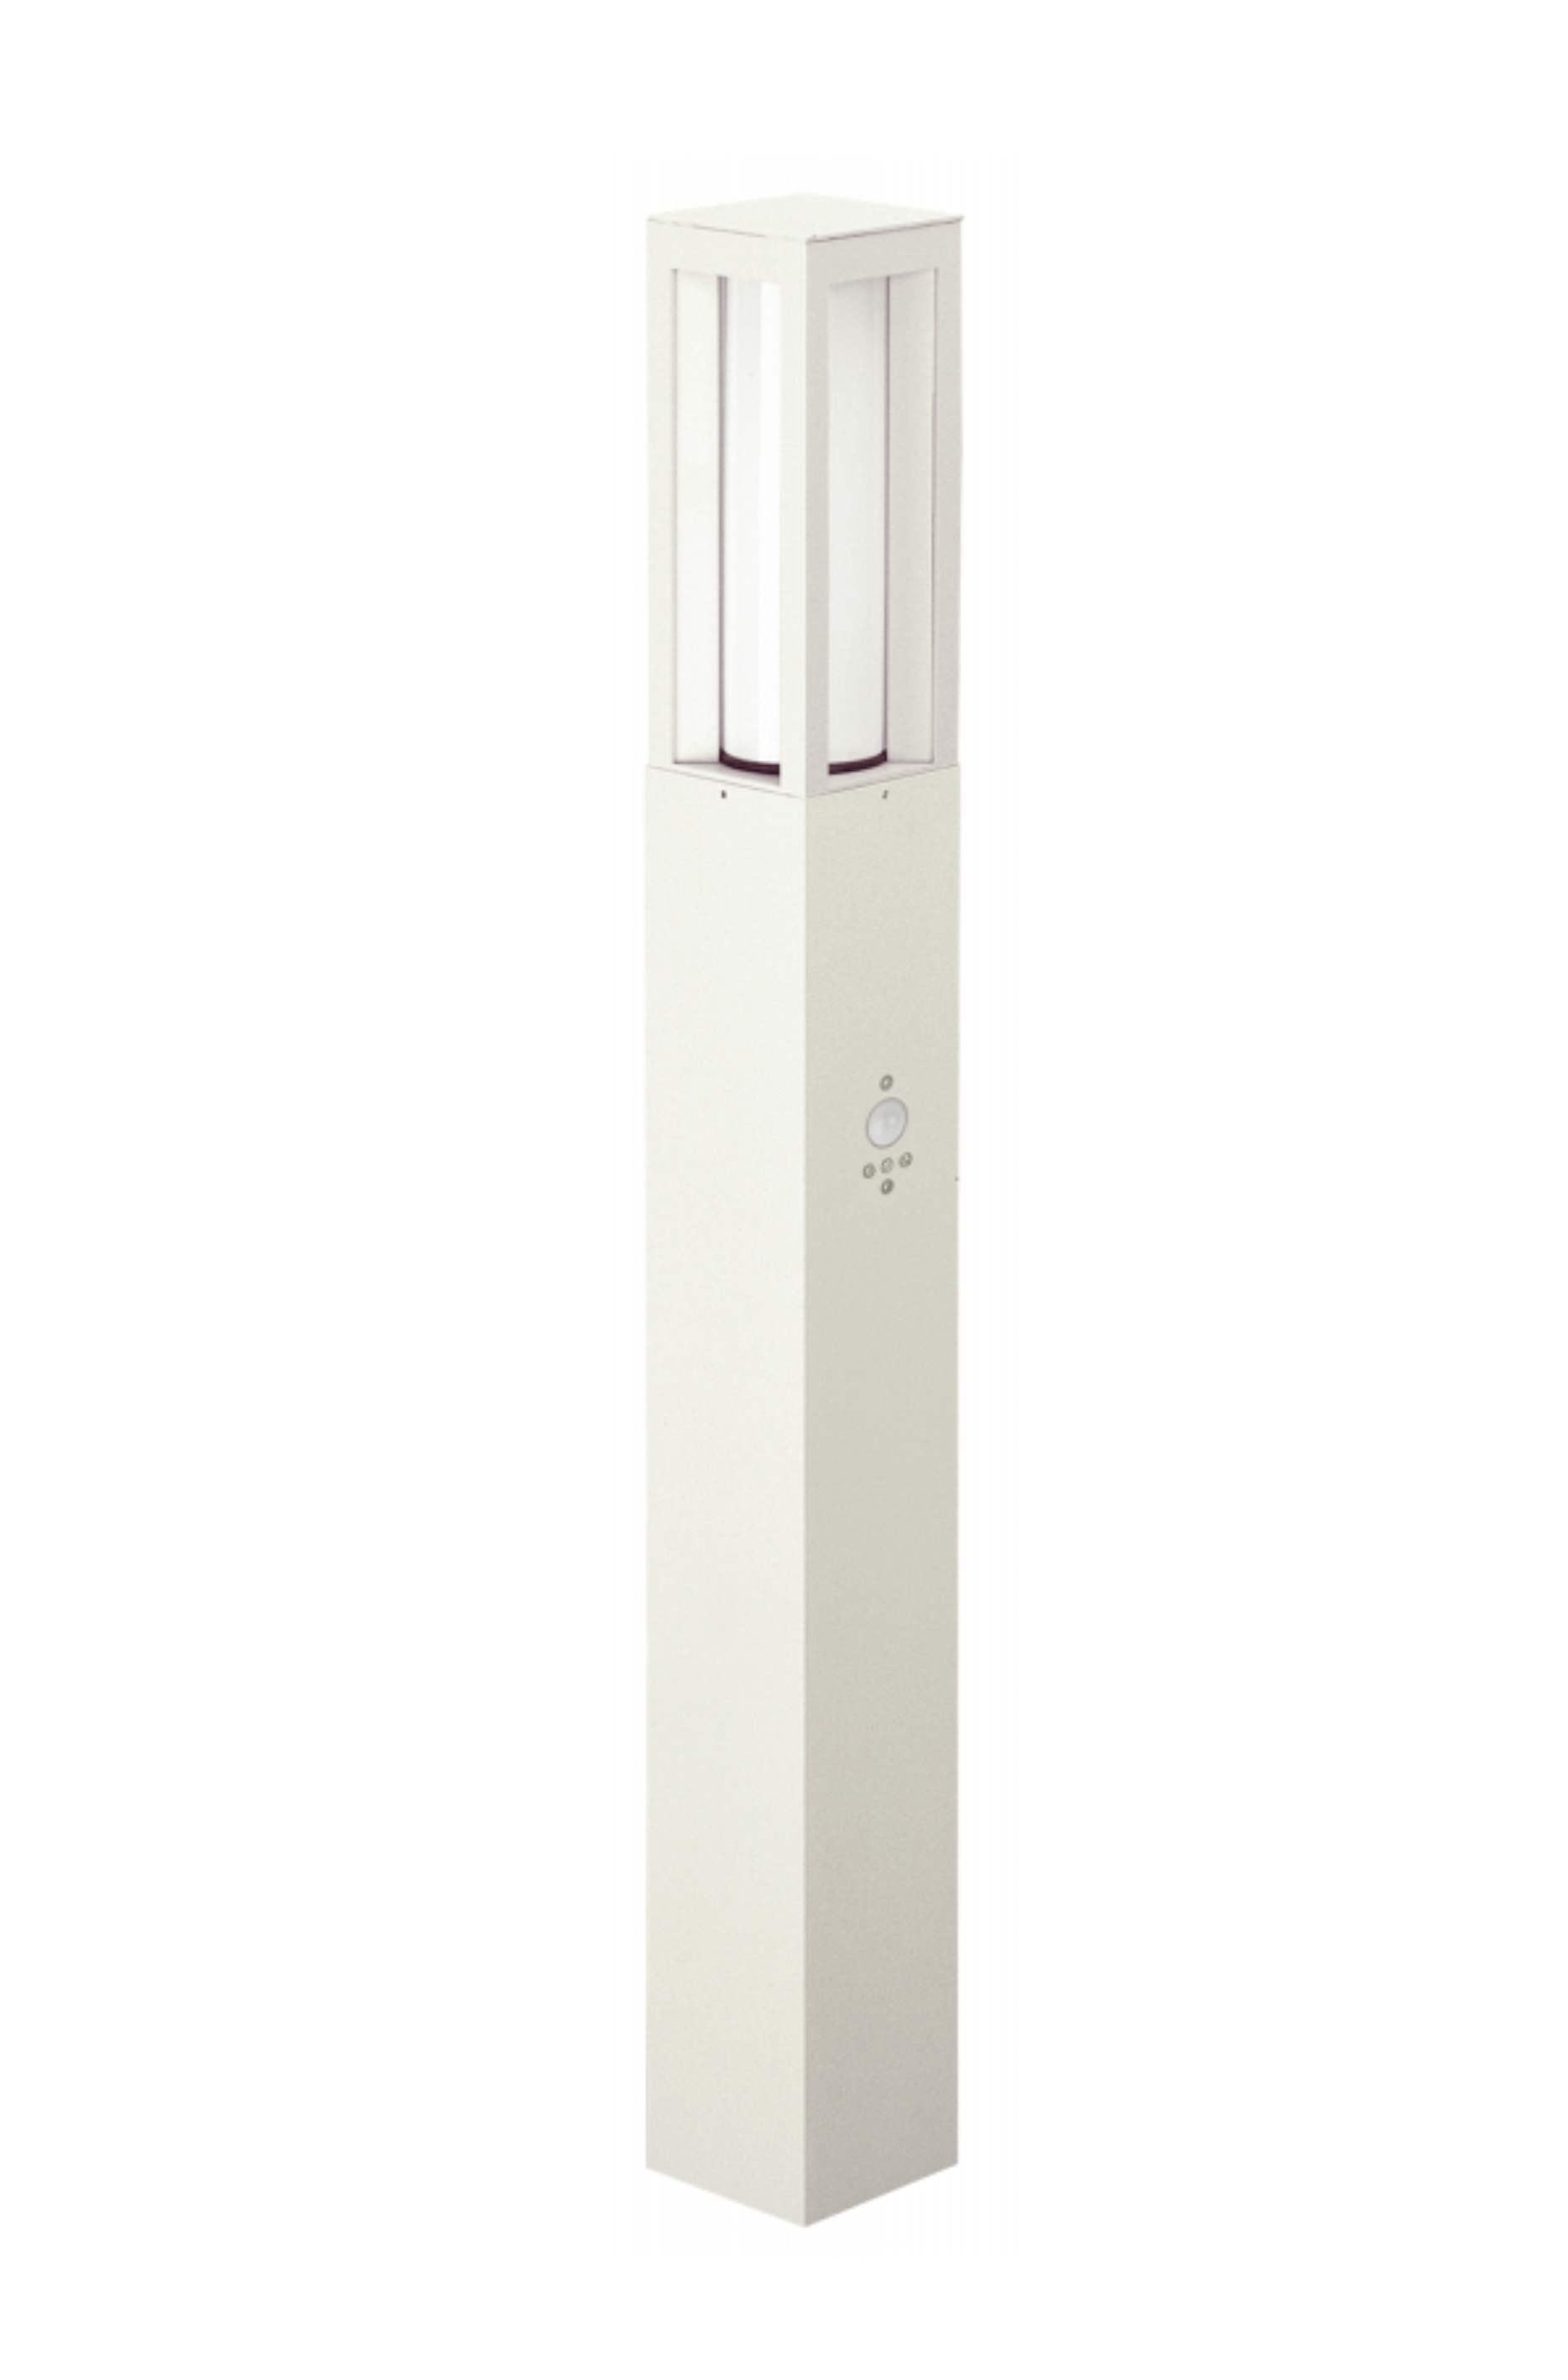 Albert LeuchtenPollerleuchte Typ Nr. 2066 - Farbe: weiß, mit BWM 90 grad,für 1 x LED max. 20 W, E27